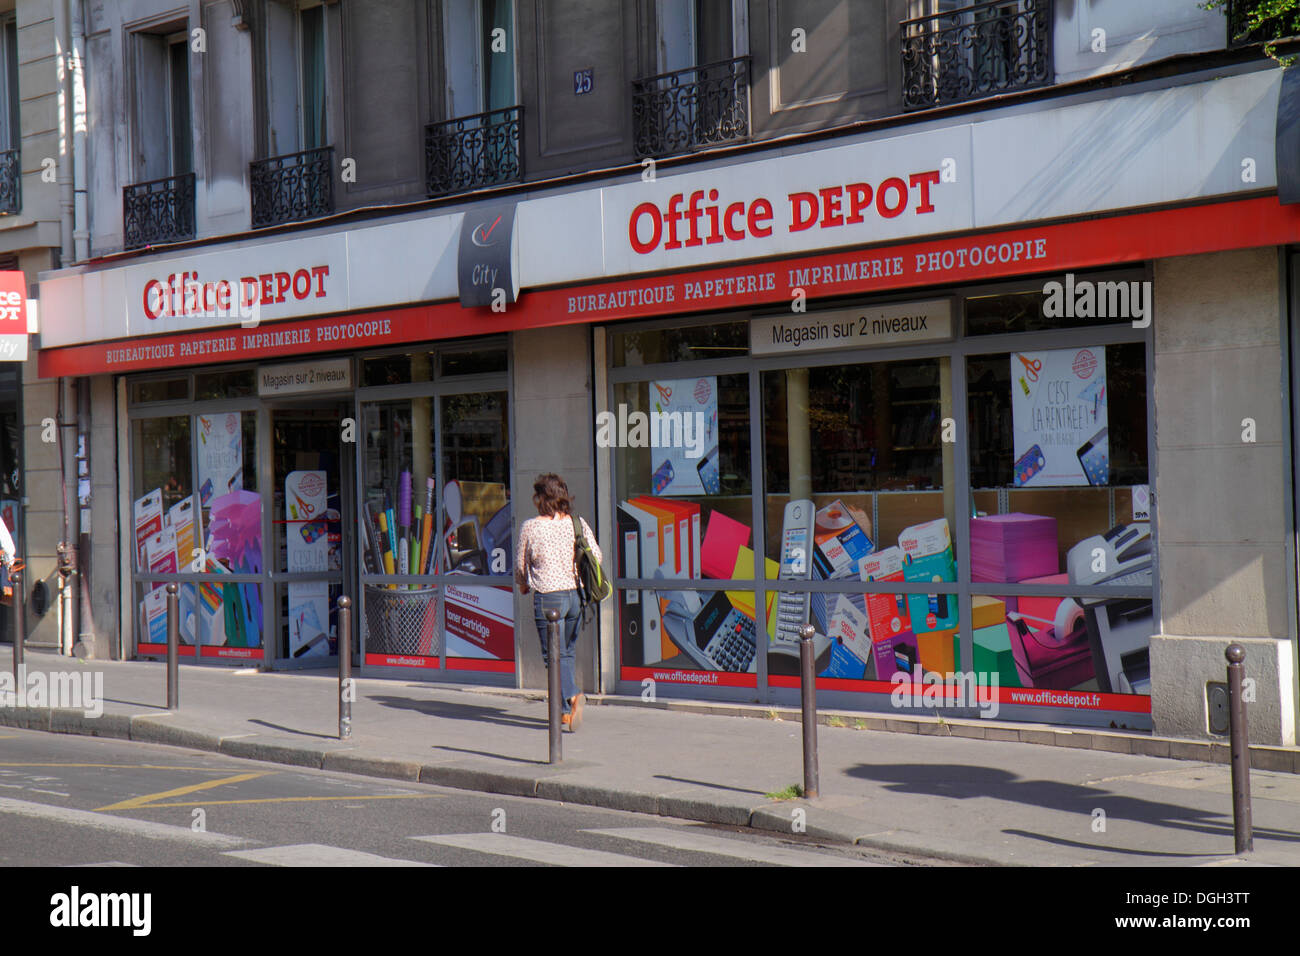 Paris France,8th arrondissement,Rue de la Pépinière,Office Depot,supply  store,front,exterior,entrance,France130814109 Stock Photo - Alamy